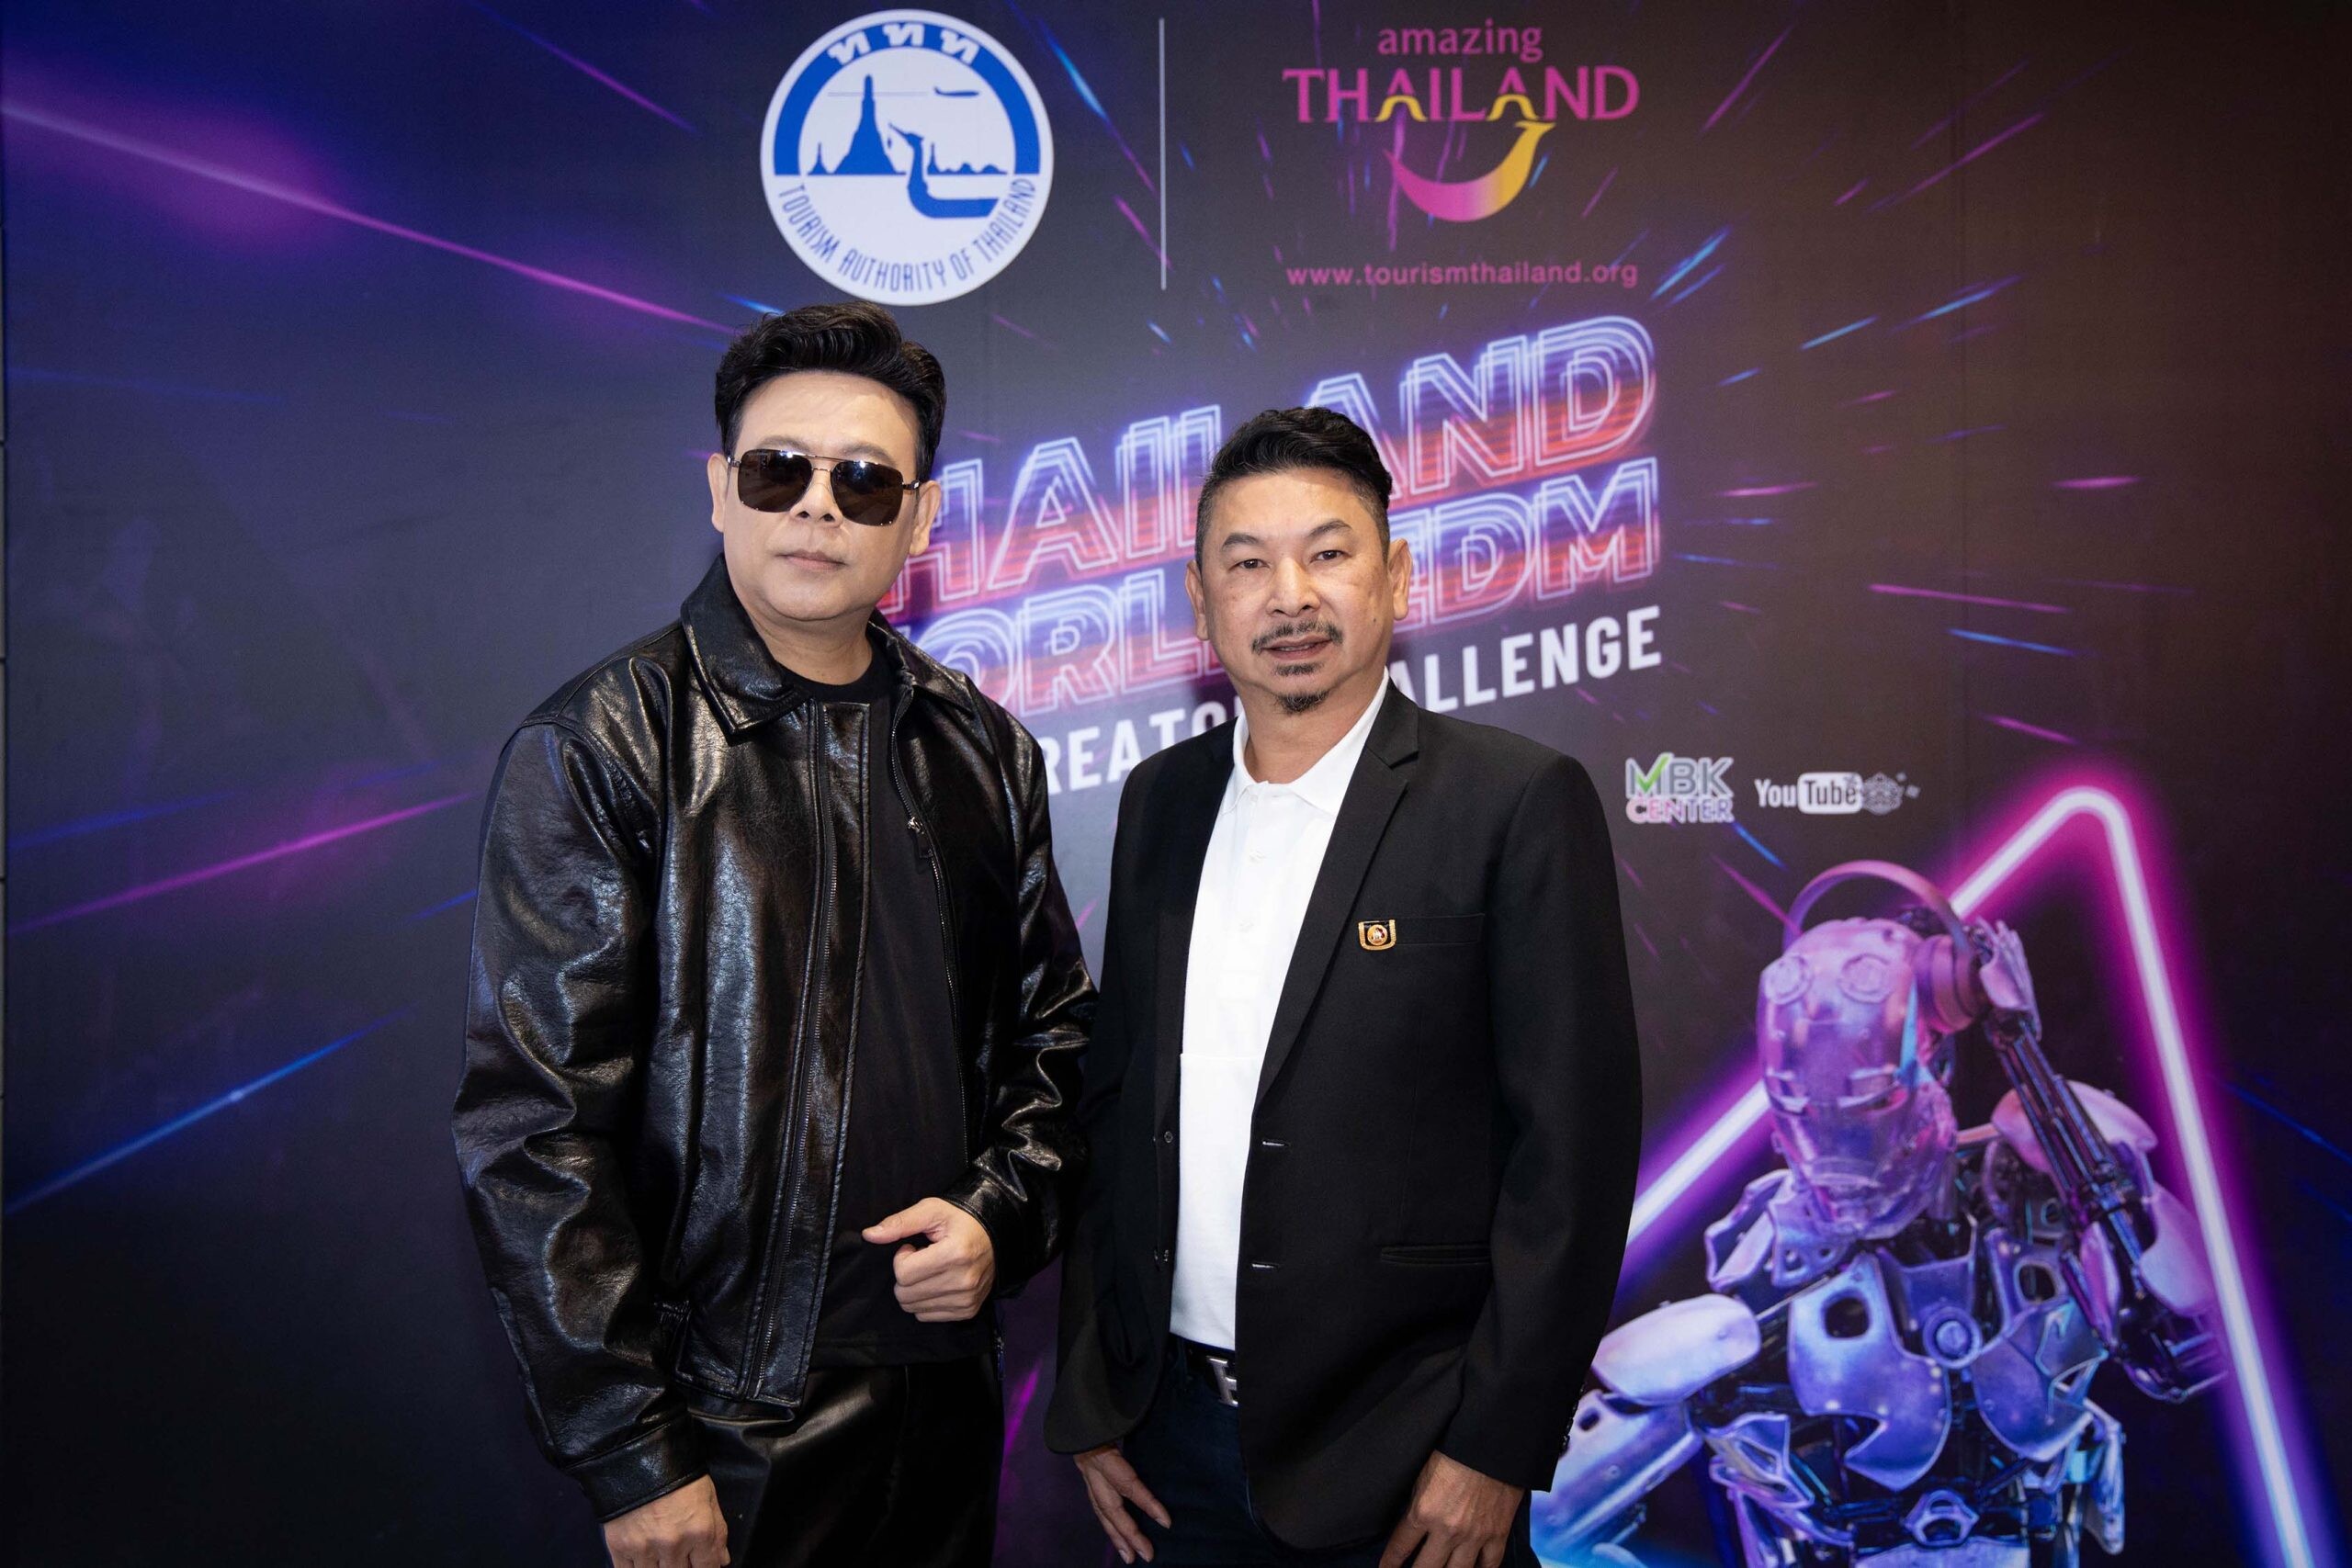 จัดประกวด Thailand World EDM Music Creator Challenge งาน EDM ระดับโลก สื่อความเป็นไทยให้โลกหลงใหลผ่านเสียงเพลง